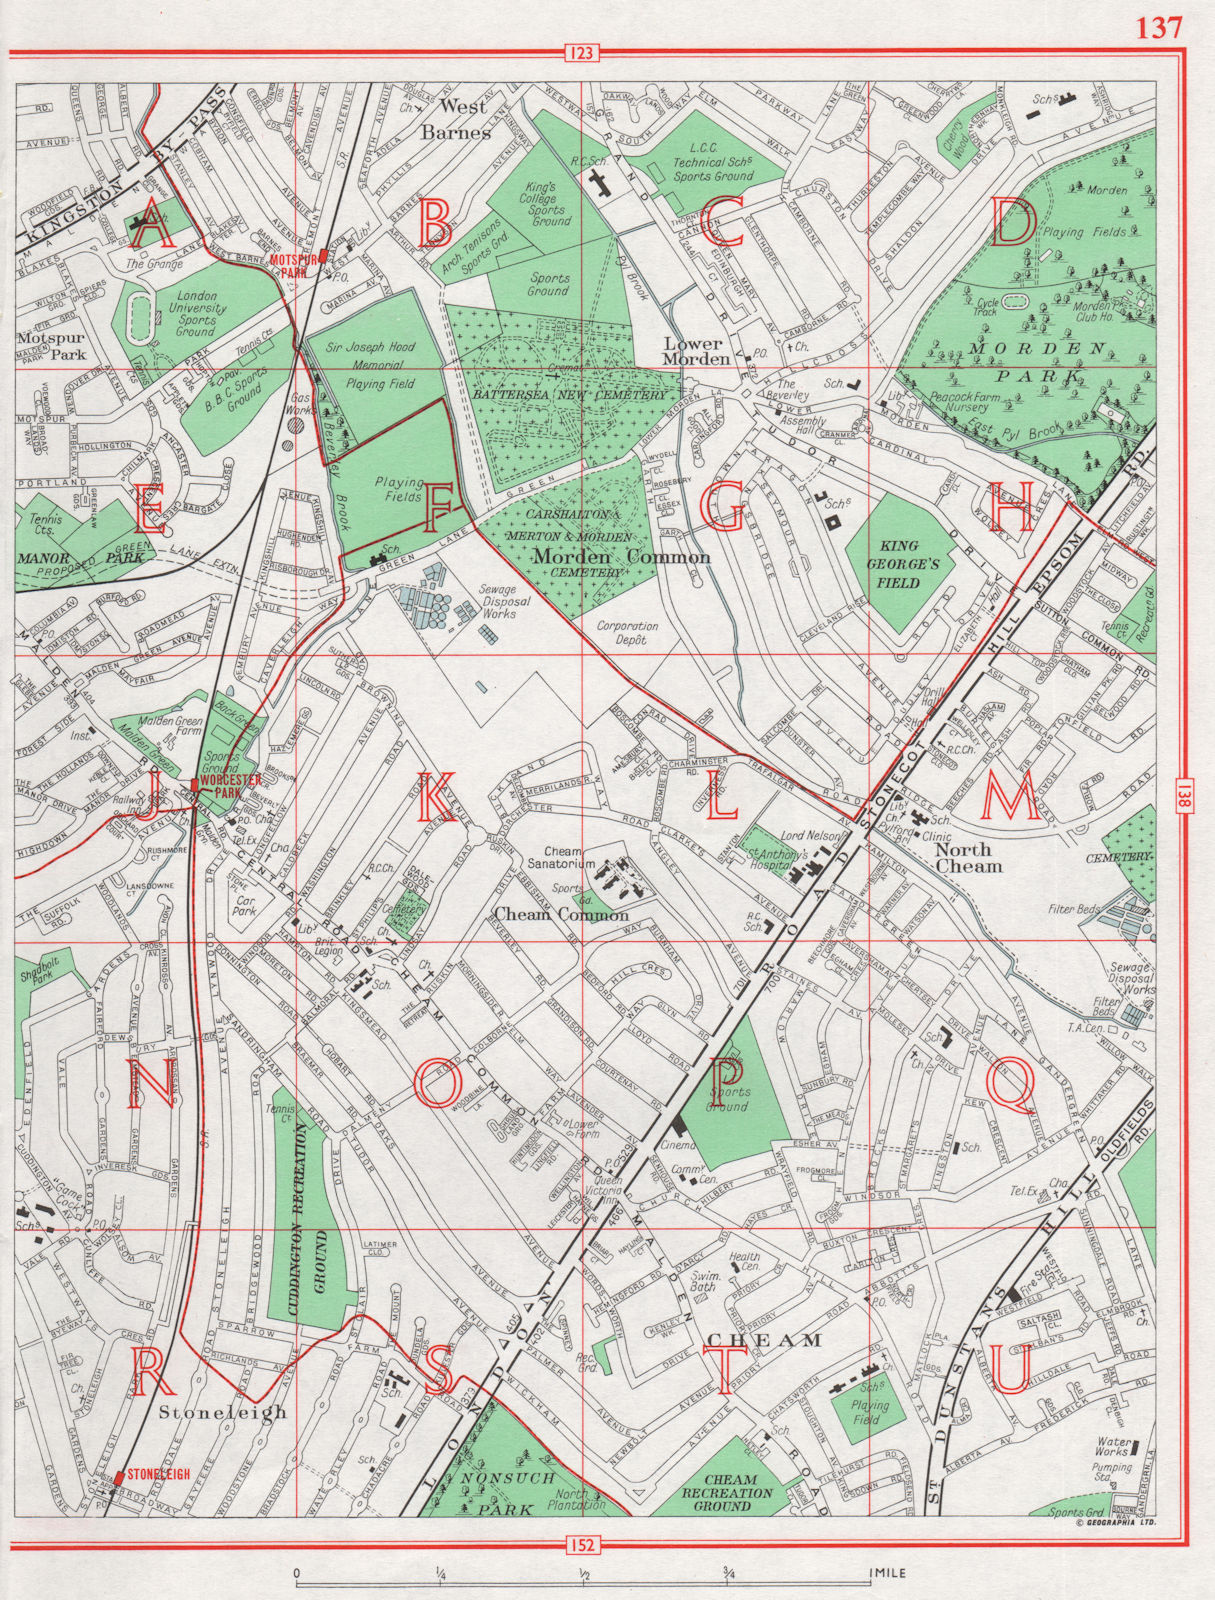 BROMLEY Beckenham Downham Plaistow Shortlands Grove Park Plaistow 1964 map 